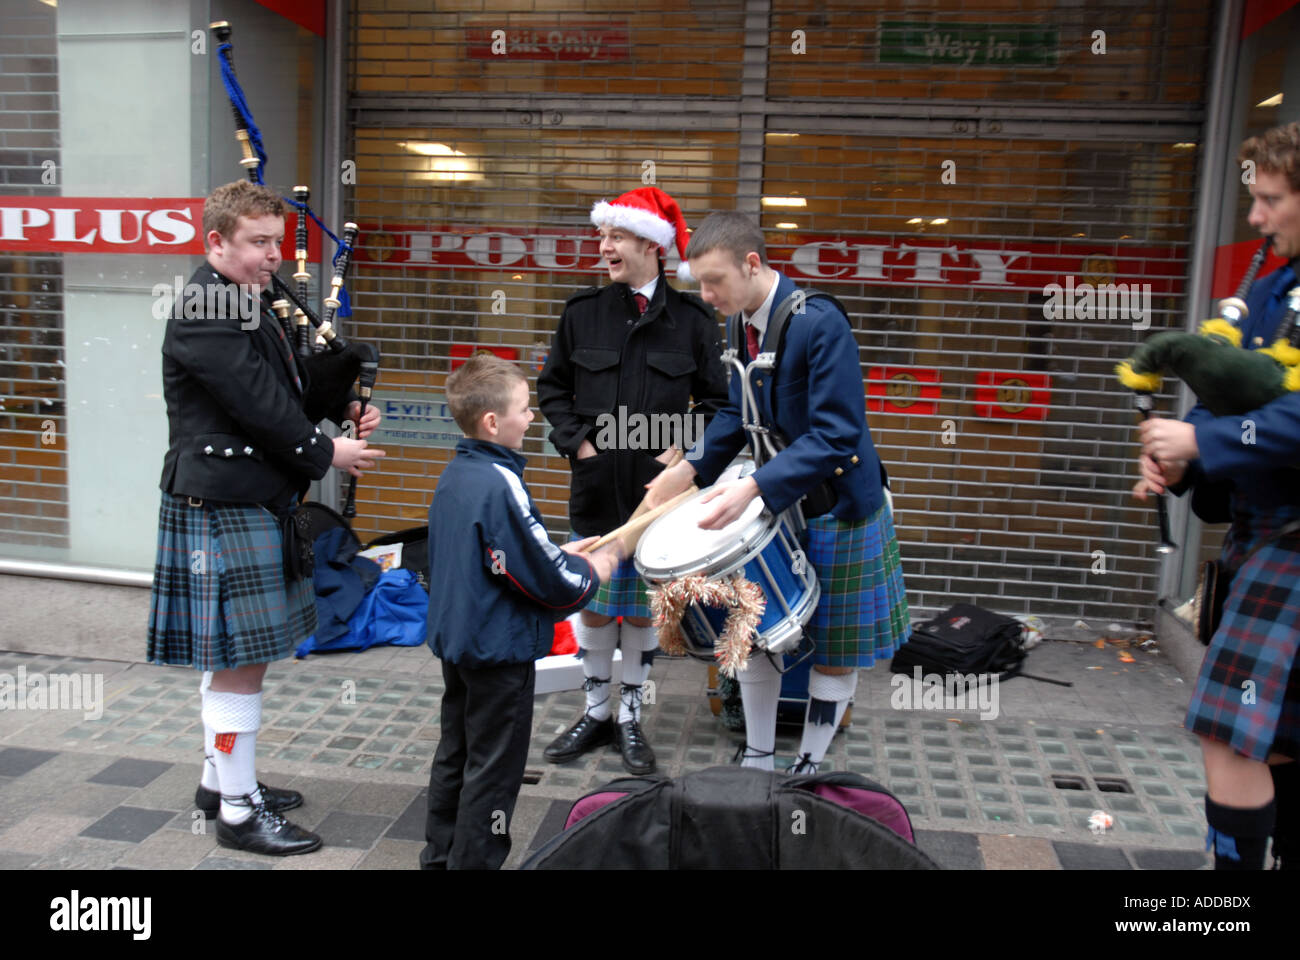 Jeune garçon à jouer de la batterie, des Ecossais Pipers divertissement du public la veille de Noël. Sauchiehall Street. Glasgow. L'Écosse. Banque D'Images